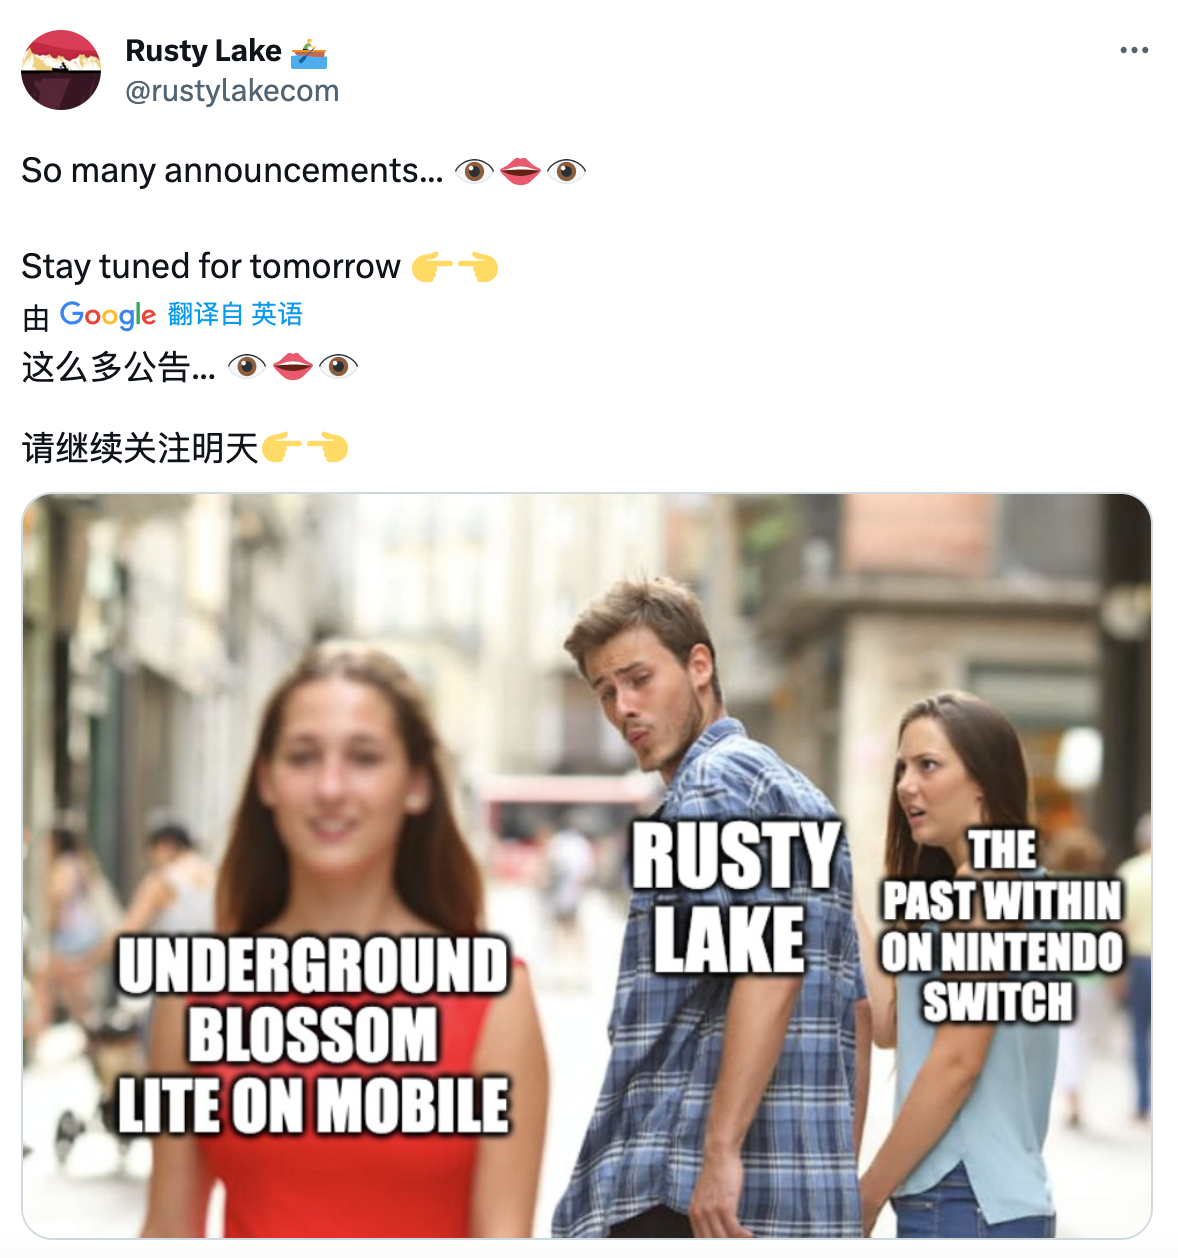 锈湖发布预告，新作《Underground Blossom》Demo似乎离手机平台不远啦！
*你将穿梭于Laura的记忆与人生中，帮助她理解自己的人生并摆脱思想的腐朽
*当然，我们站内是没有的#锈湖